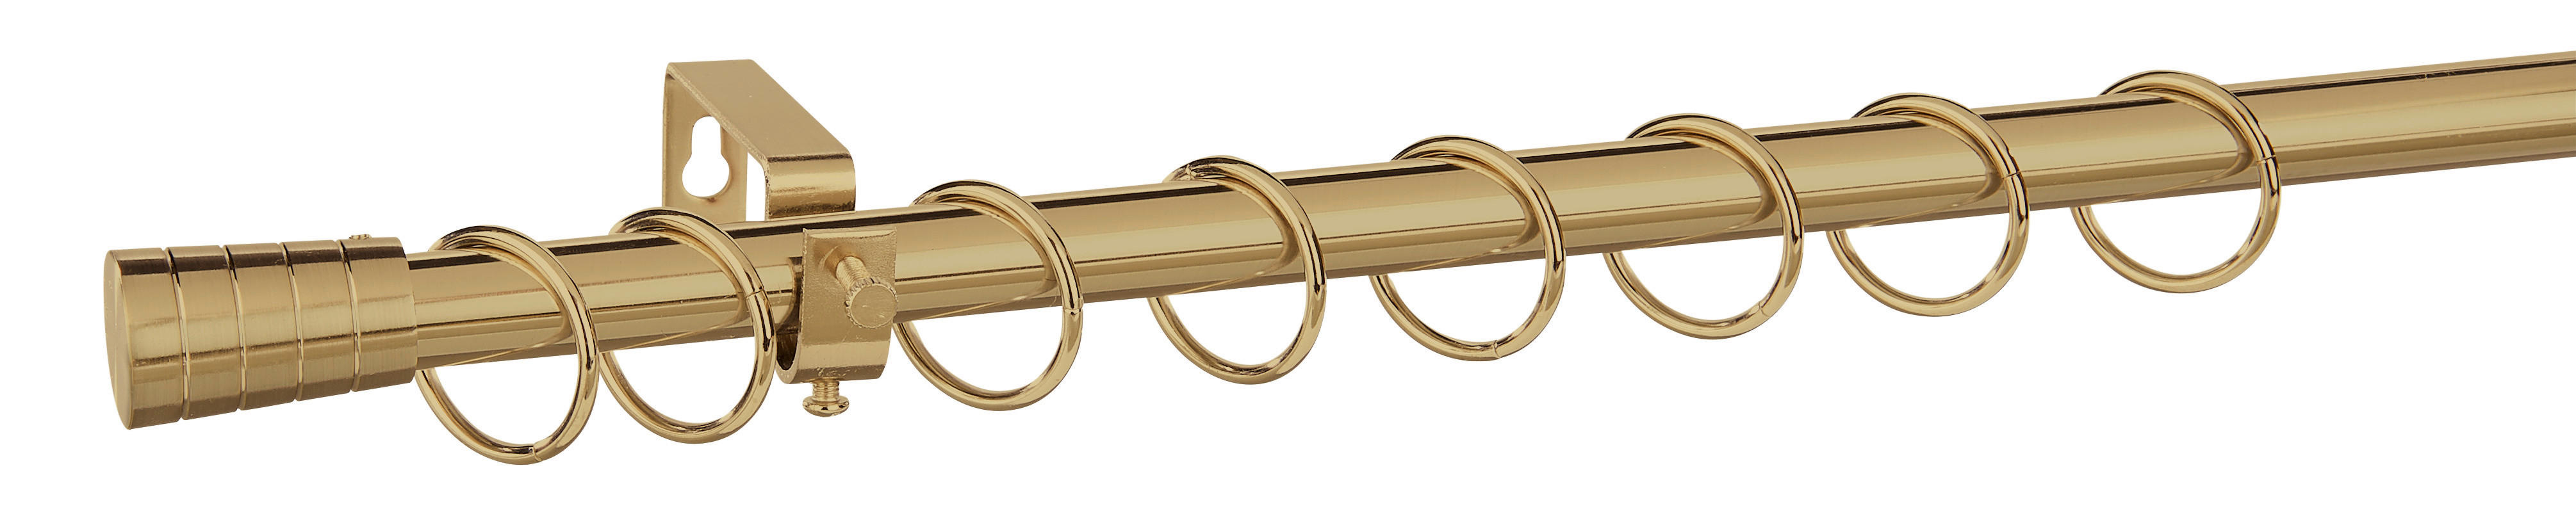 Stilgarnituren Stilgarnitur_Kappe_Metall - gold/champagner (1,90cm)